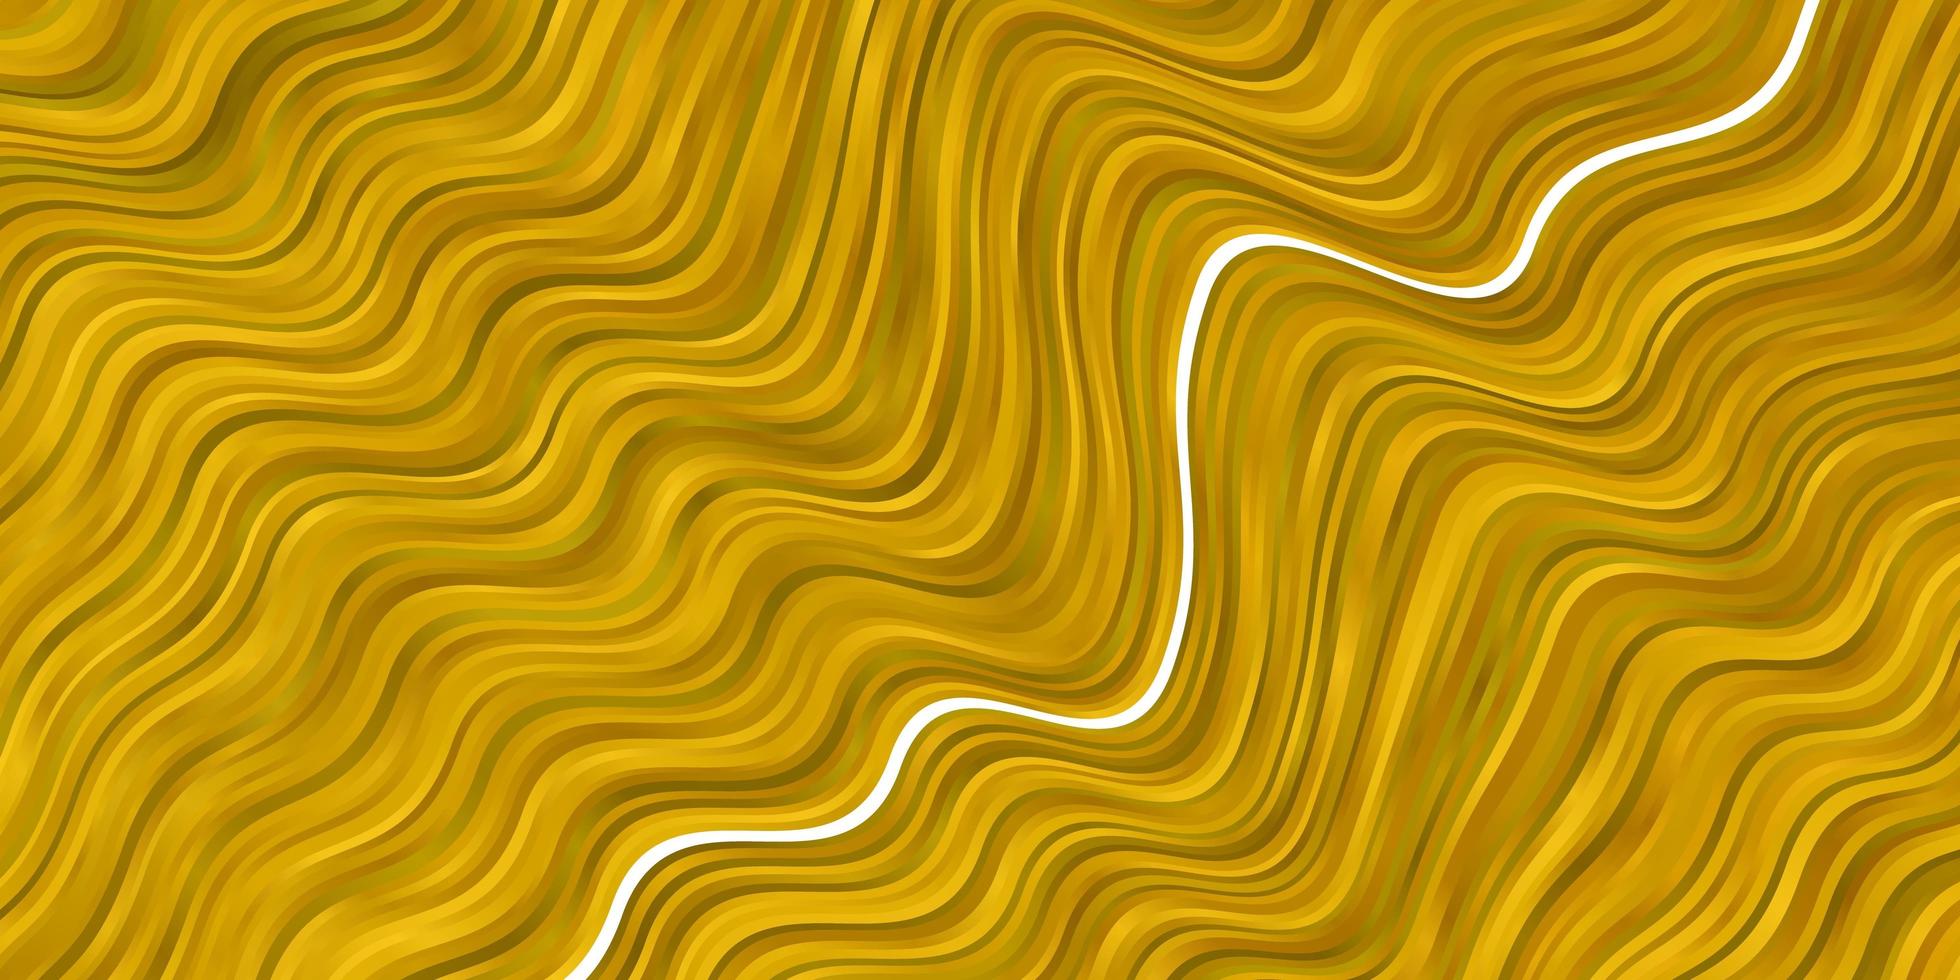 layout de vetor amarelo escuro com curvas.